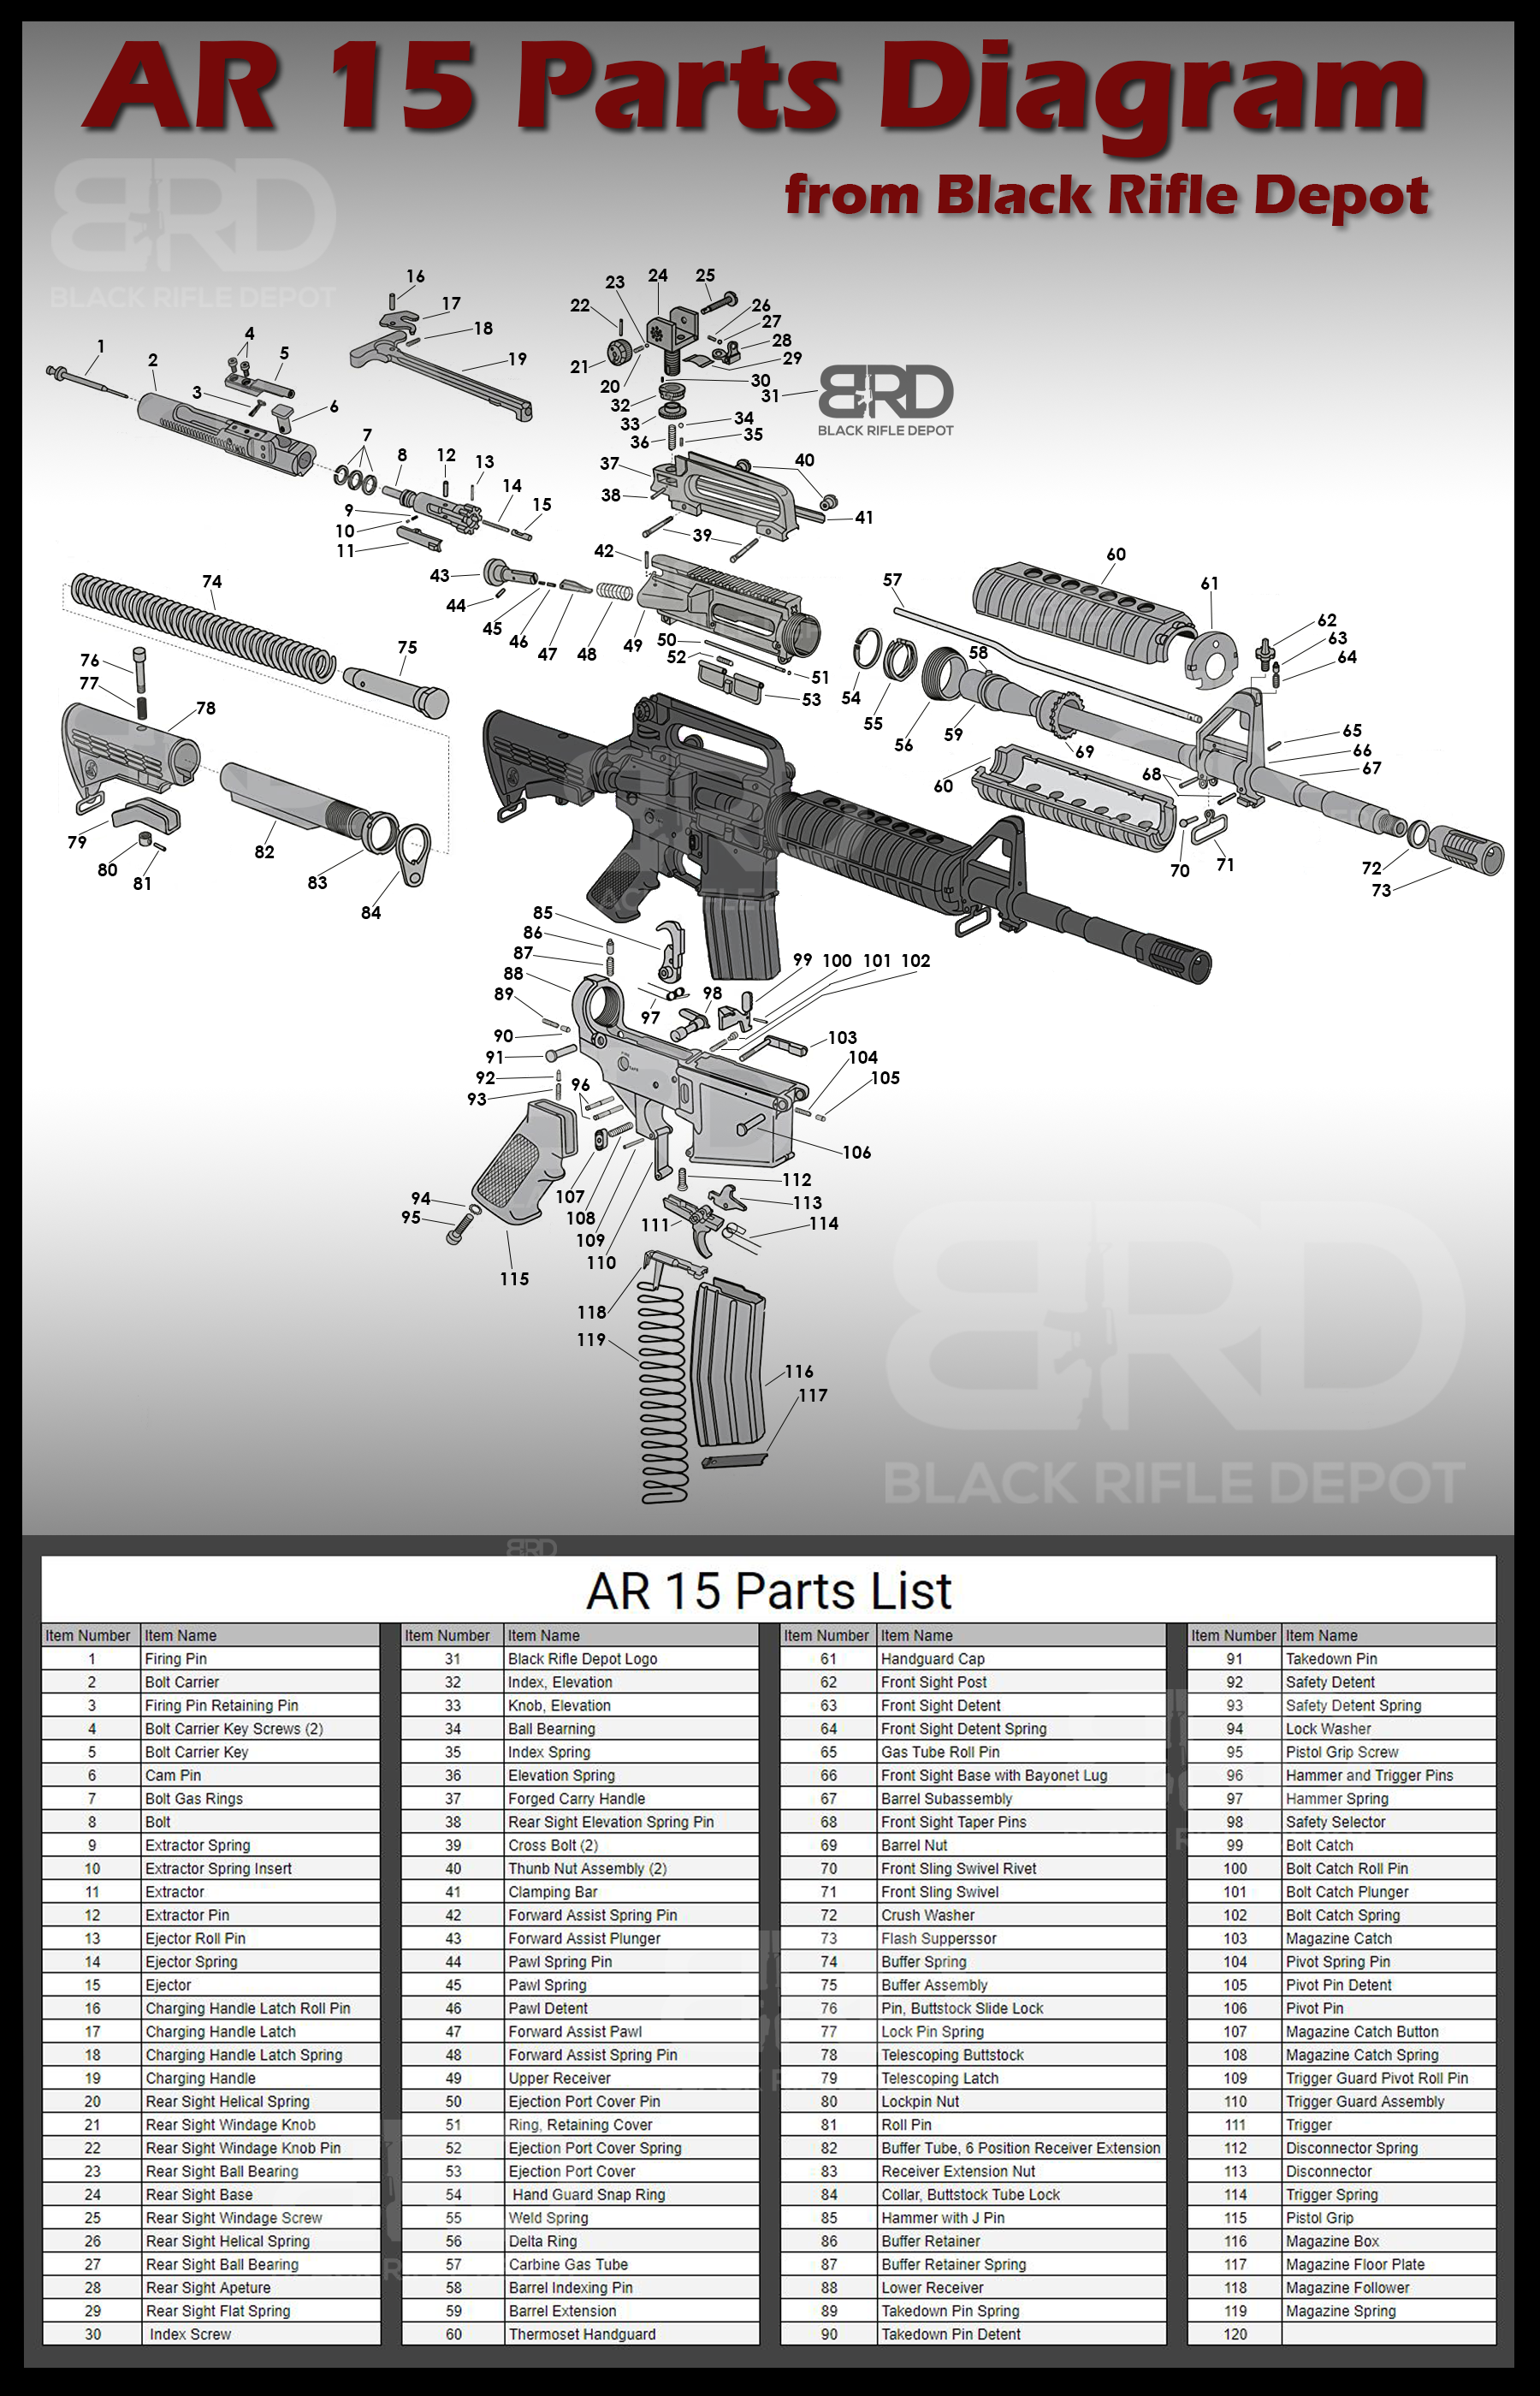 AR 15 Parts Diagram